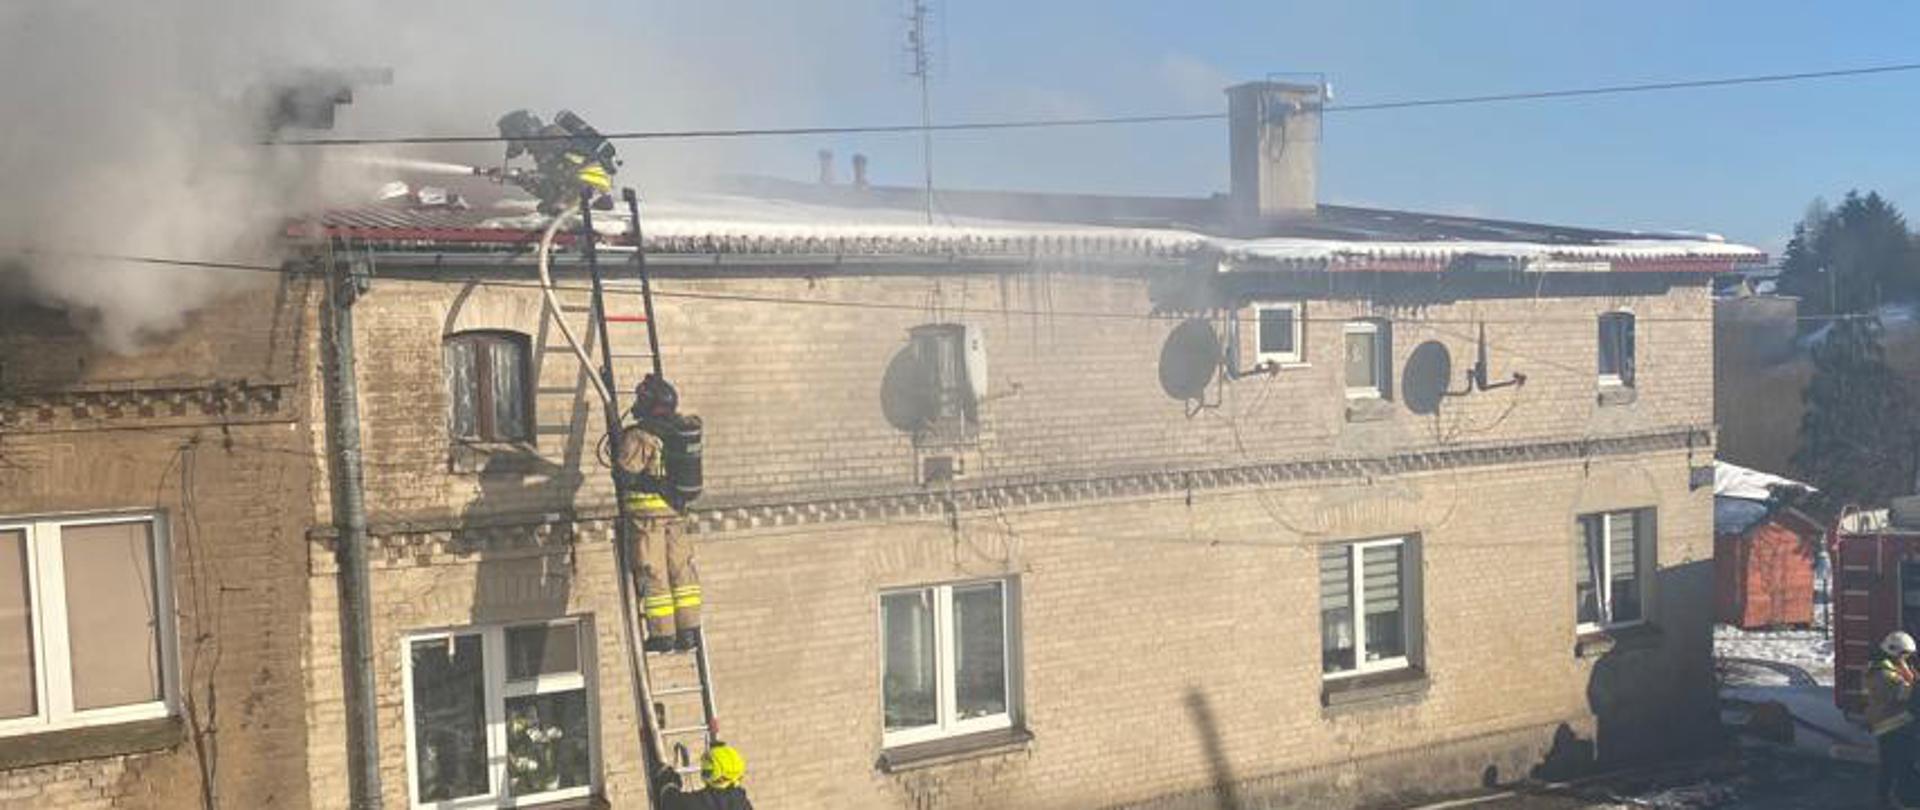 Widok domu od ulicy. Spod dachu wydobywa się dym. Strażacy podają prąd wody z drabiny, z prawej strony widać strażaka obsługującego autopompę samochodu pożarniczego.